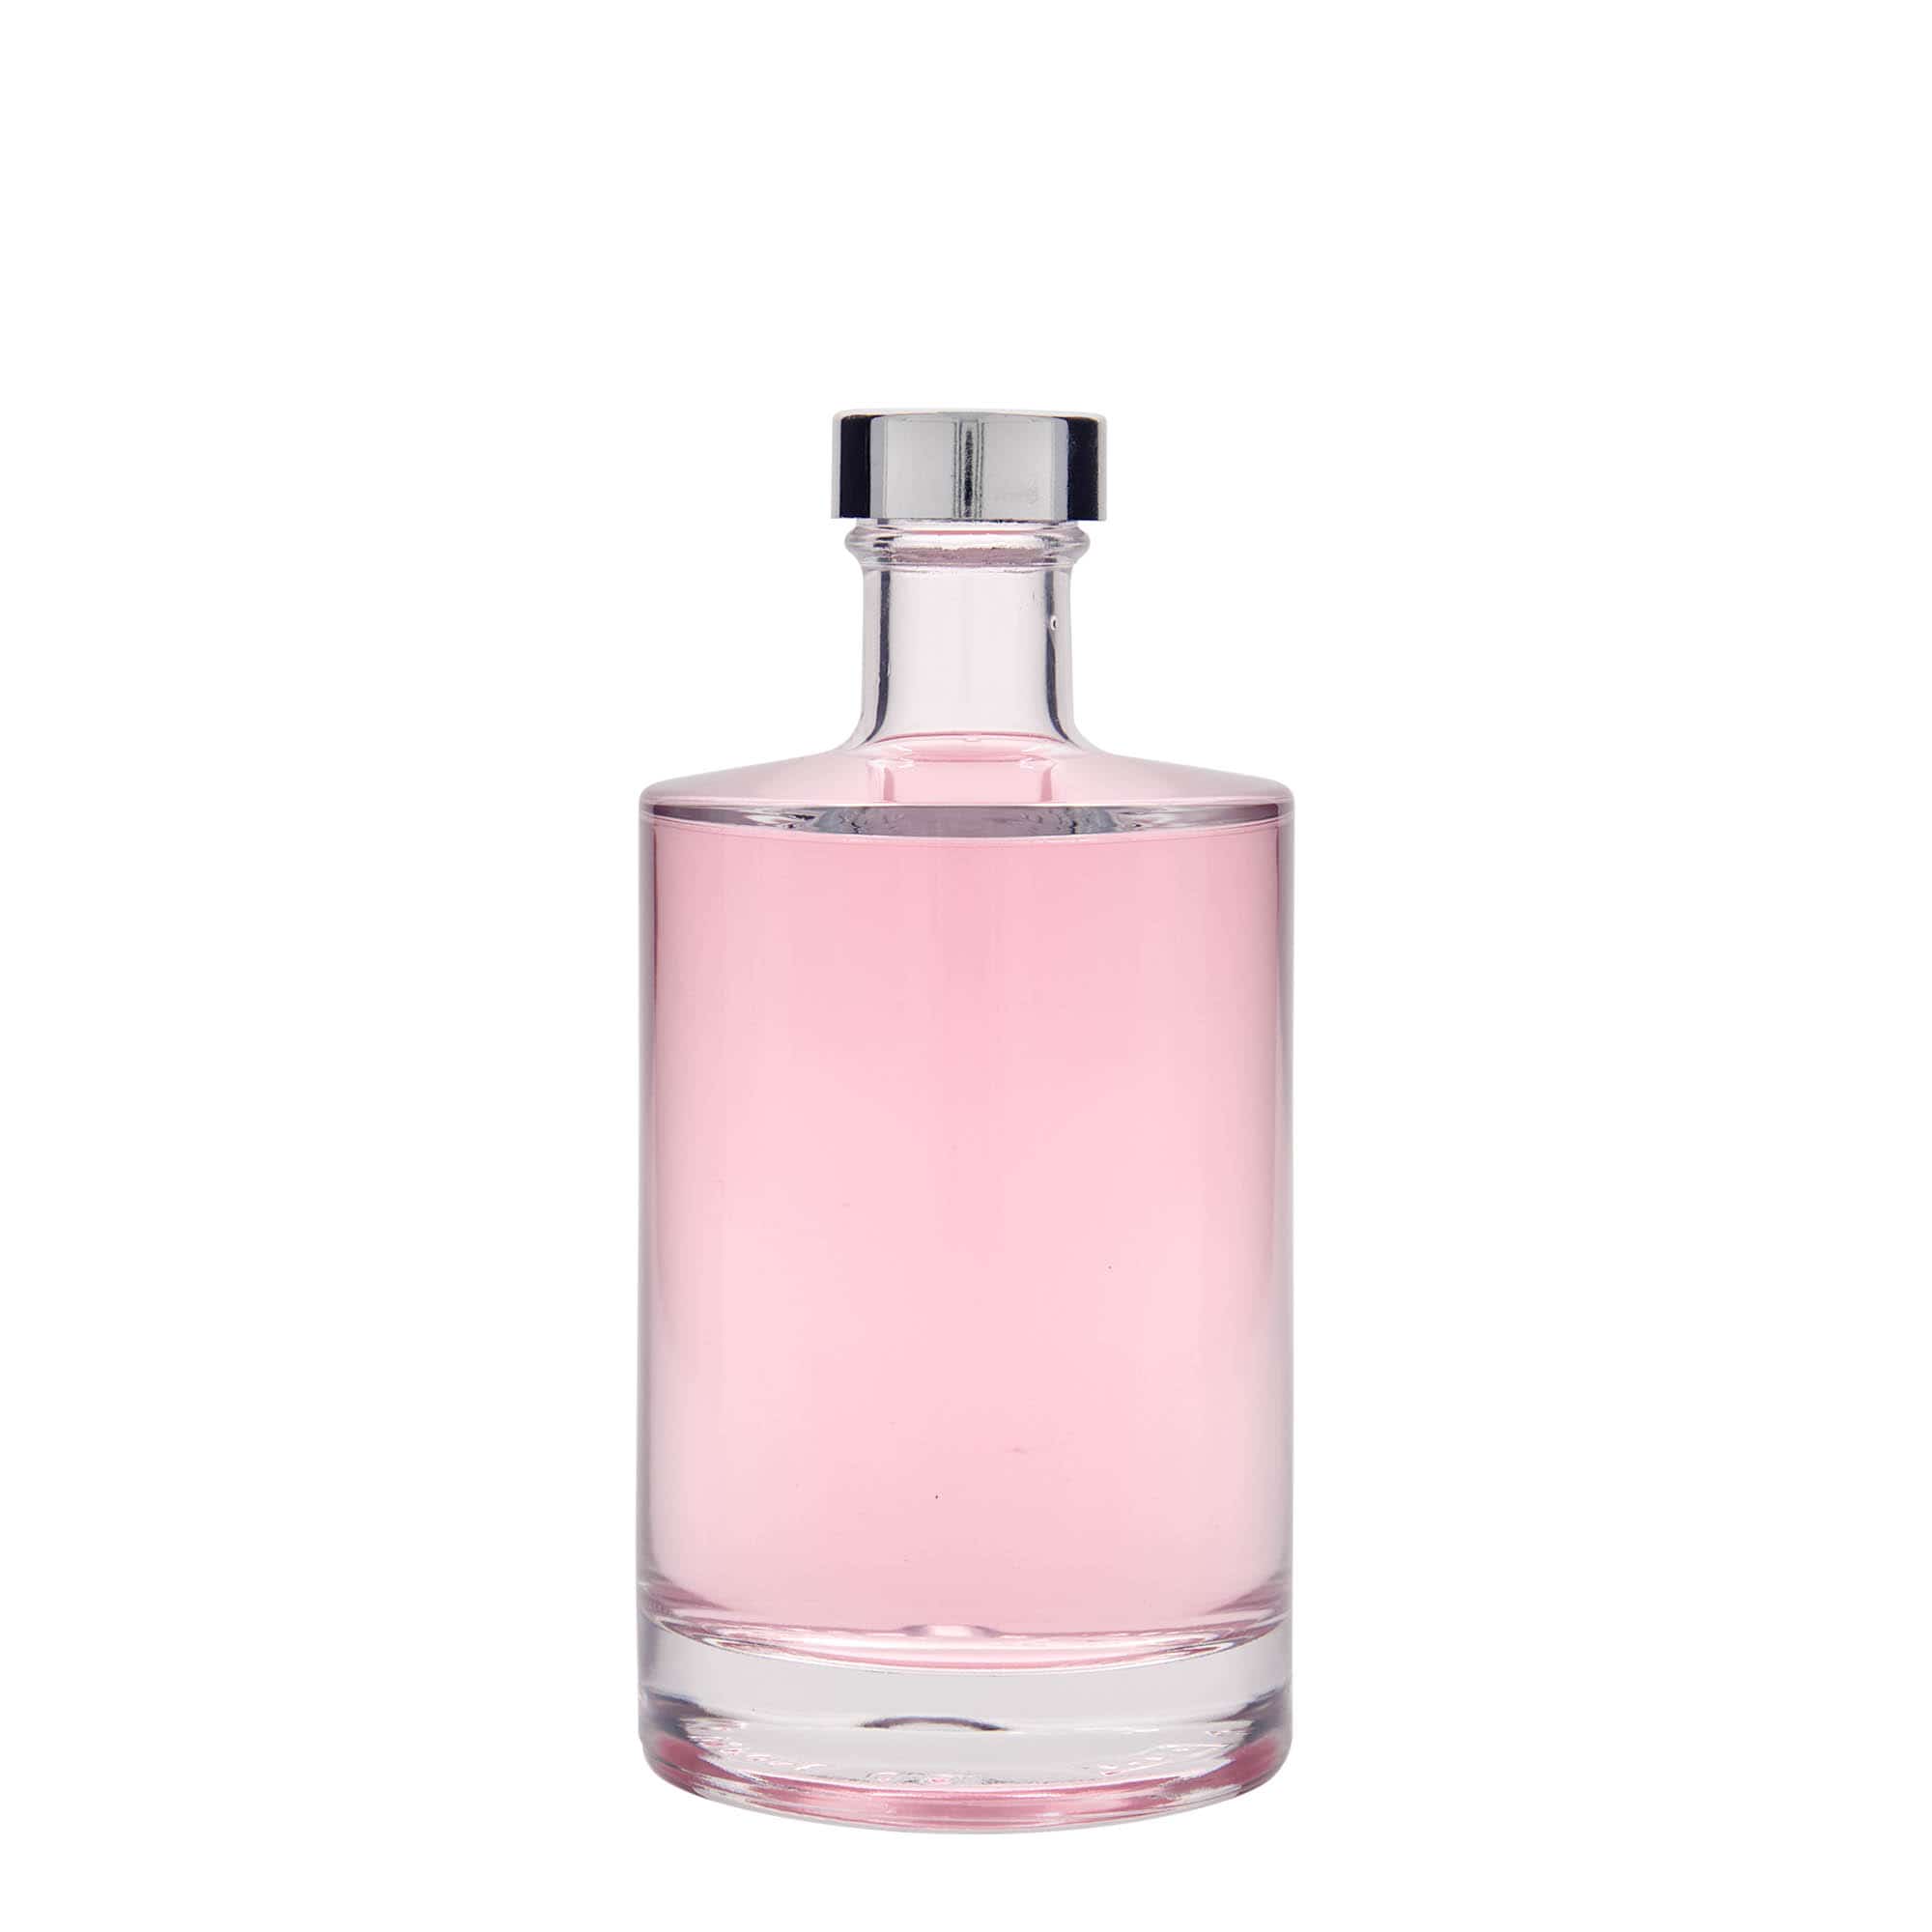 500 ml glass bottle 'Aventura', closure: GPI 33